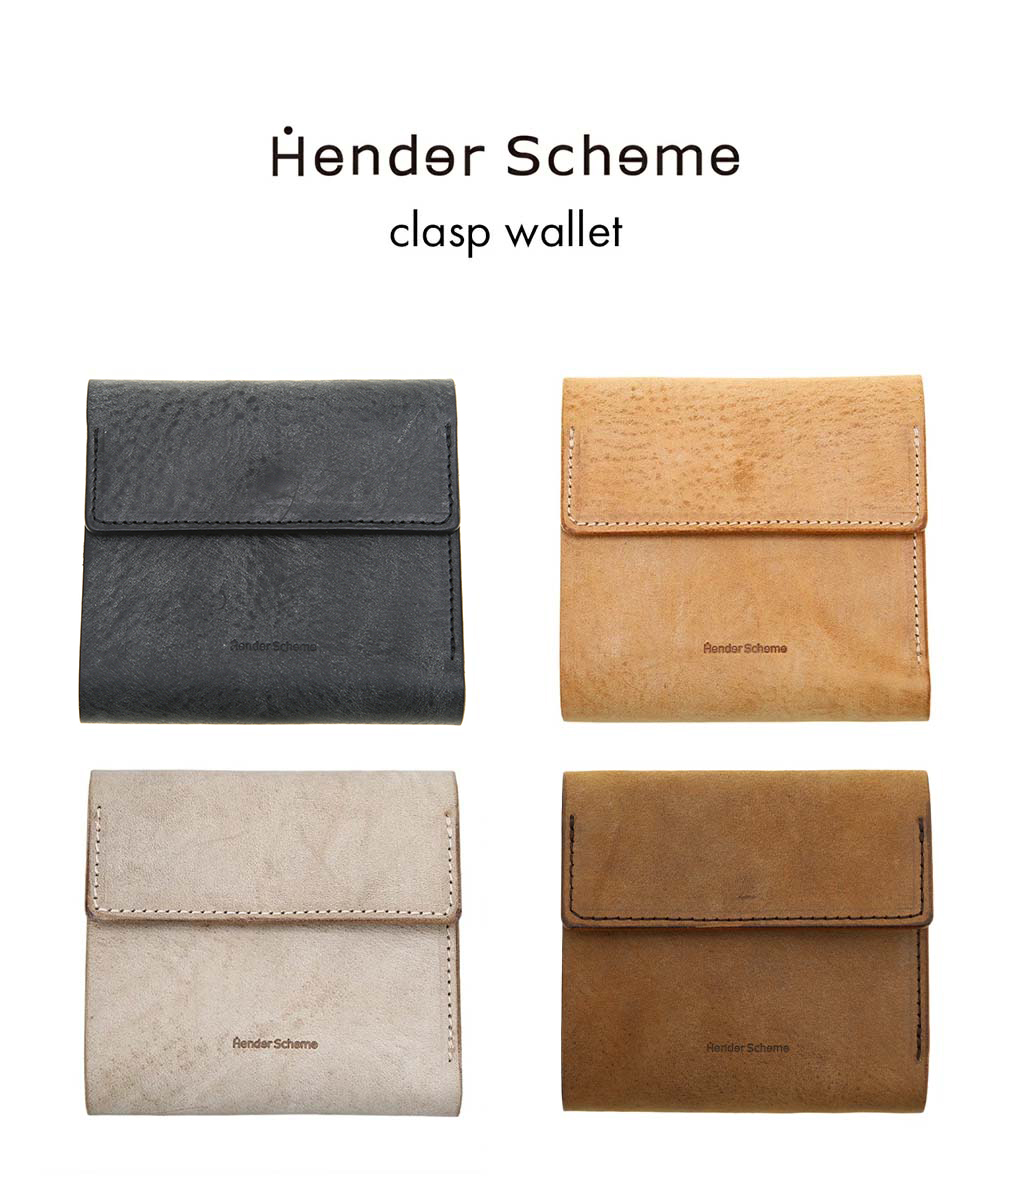 Hender Scheme   エンダースキーマ clasp wallet   全4色 三つ折り 財布 クラスプ ウォレット レザー 本革 牛革 ブラック ナチュラル チョコ アイボリー ユニセックス プレゼント ギフト ブランド箱付属 li-rc-clw 